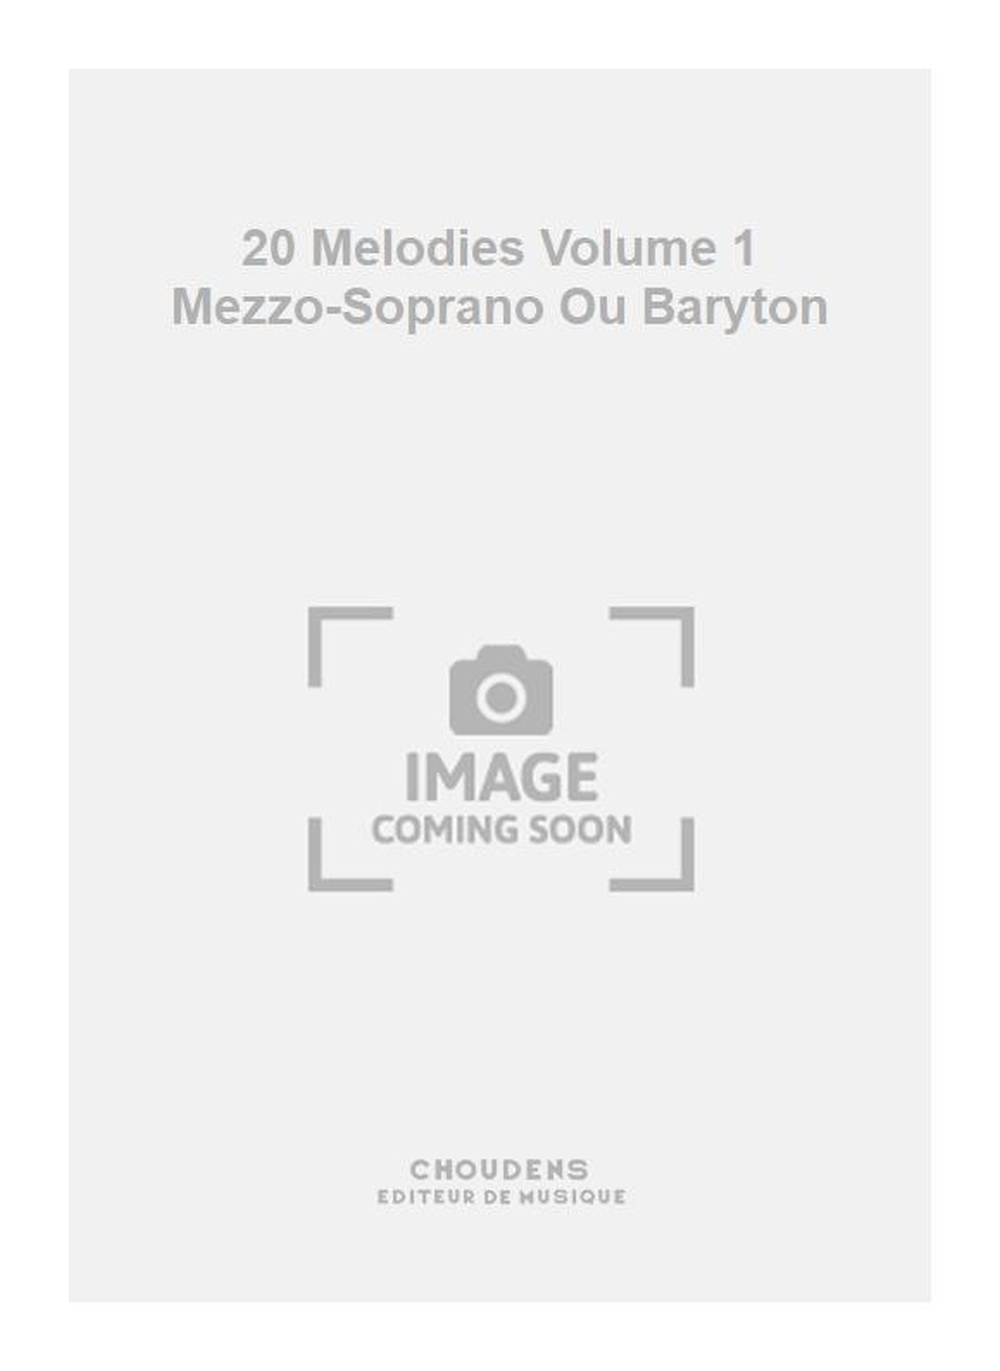 Georges Bizet: 20 Melodies Volume 1 Mezzo-Soprano Ou Baryton